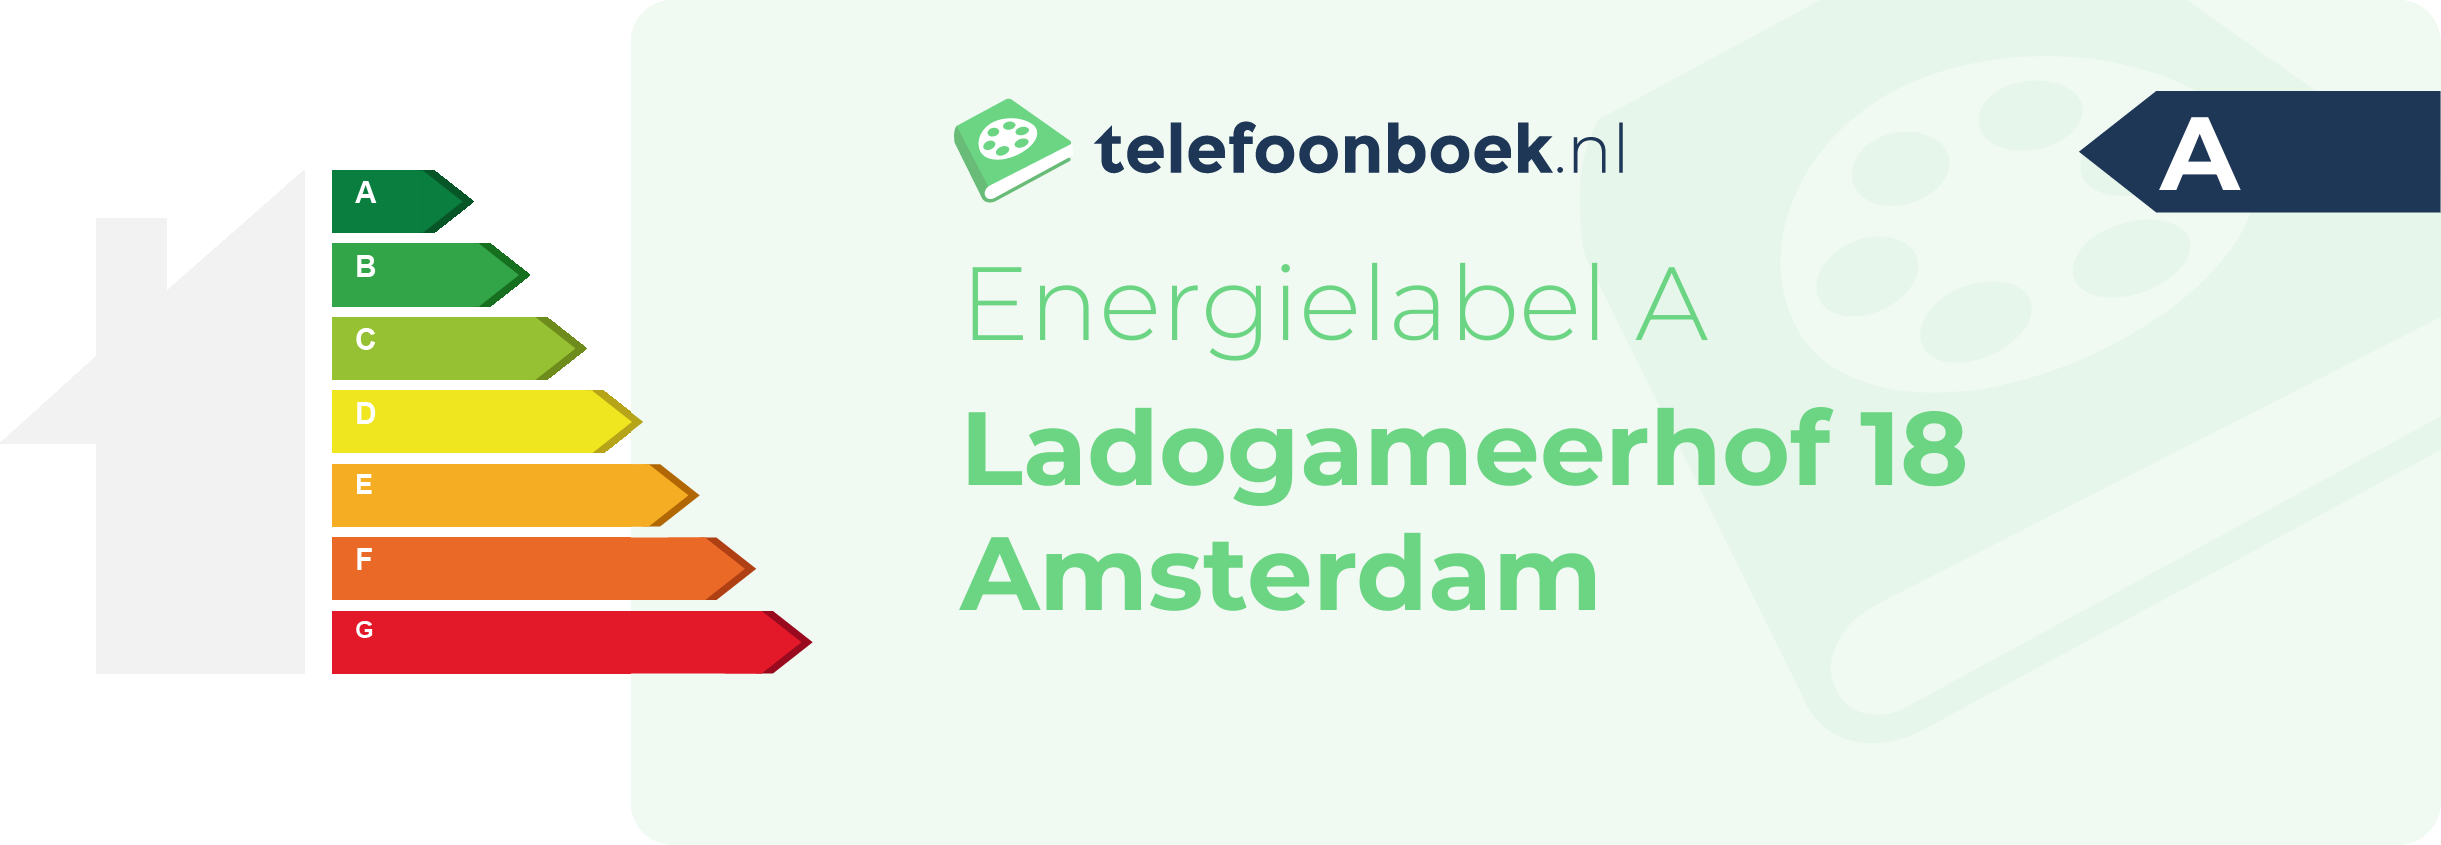 Energielabel Ladogameerhof 18 Amsterdam